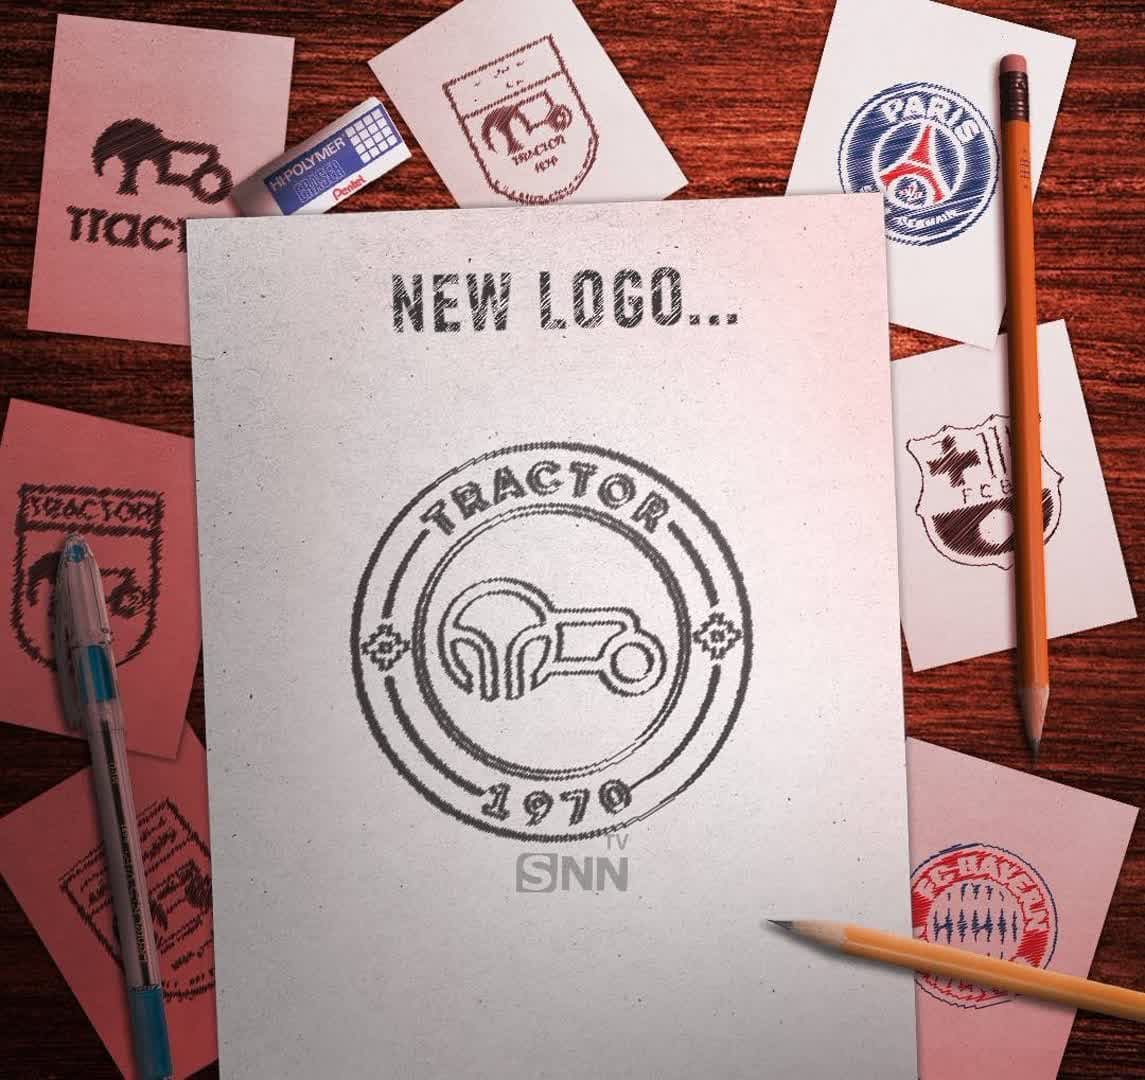 باشگاه تراکتور از لوگوی جدید خود رونمایی کرد +عکس